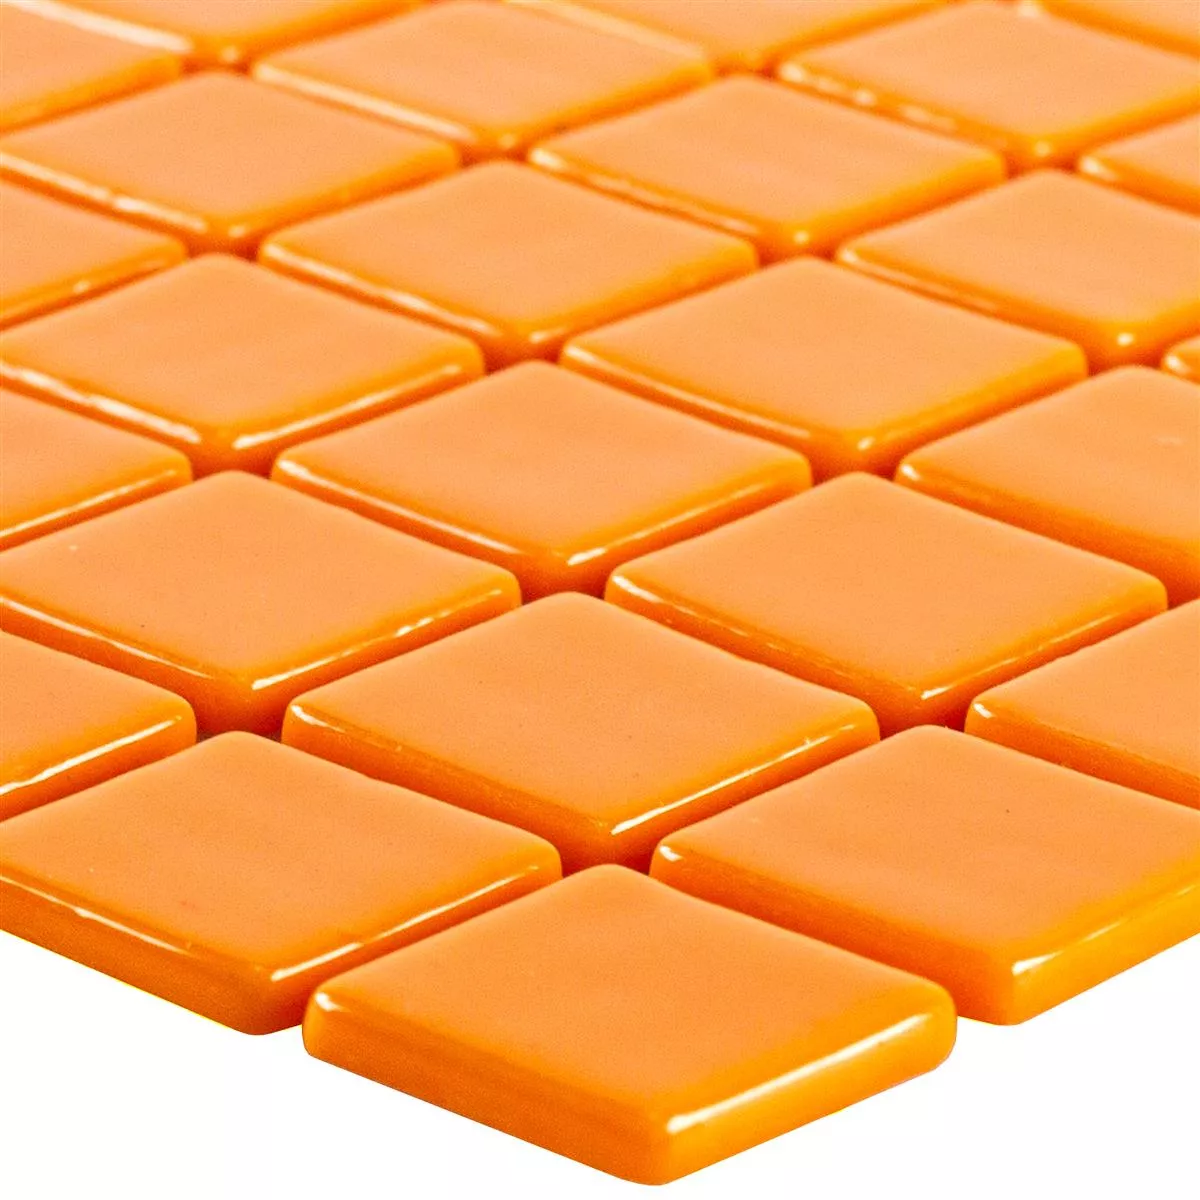 Muster von Glas Pool Schwimmbad Mosaik Pixley Orange